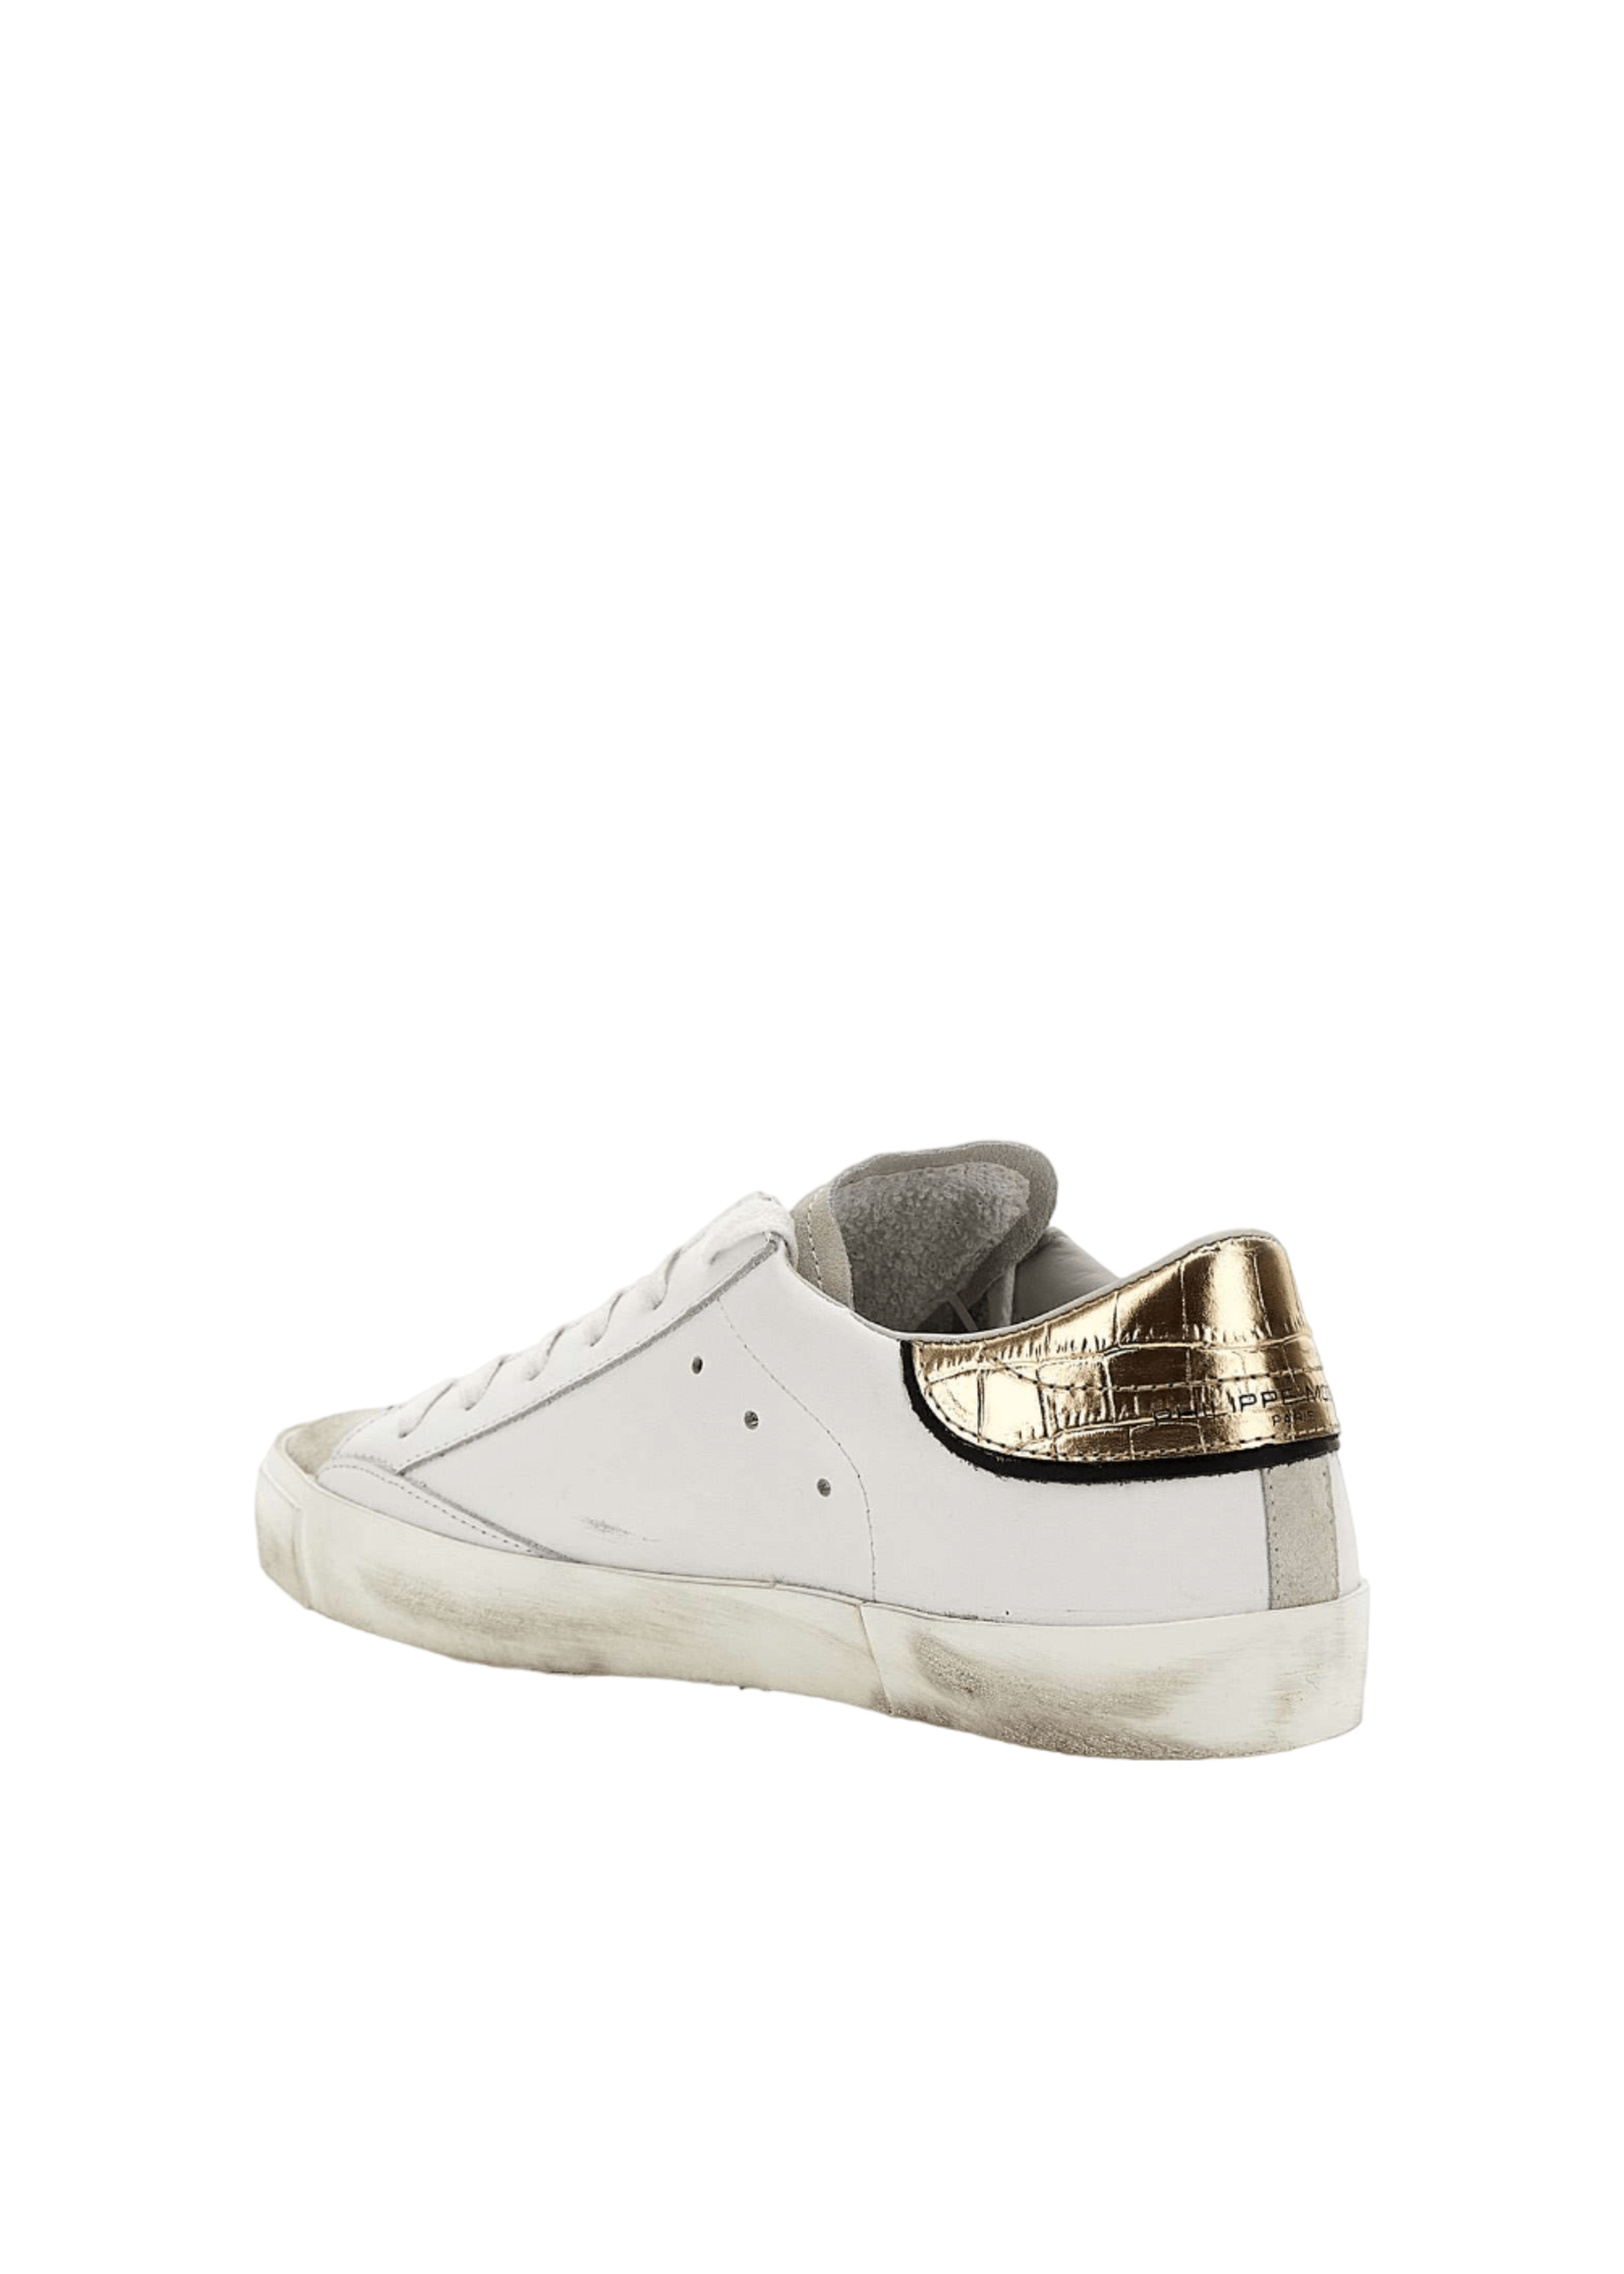 Philippe Model PRSX Sneaker - White & Gold Croc